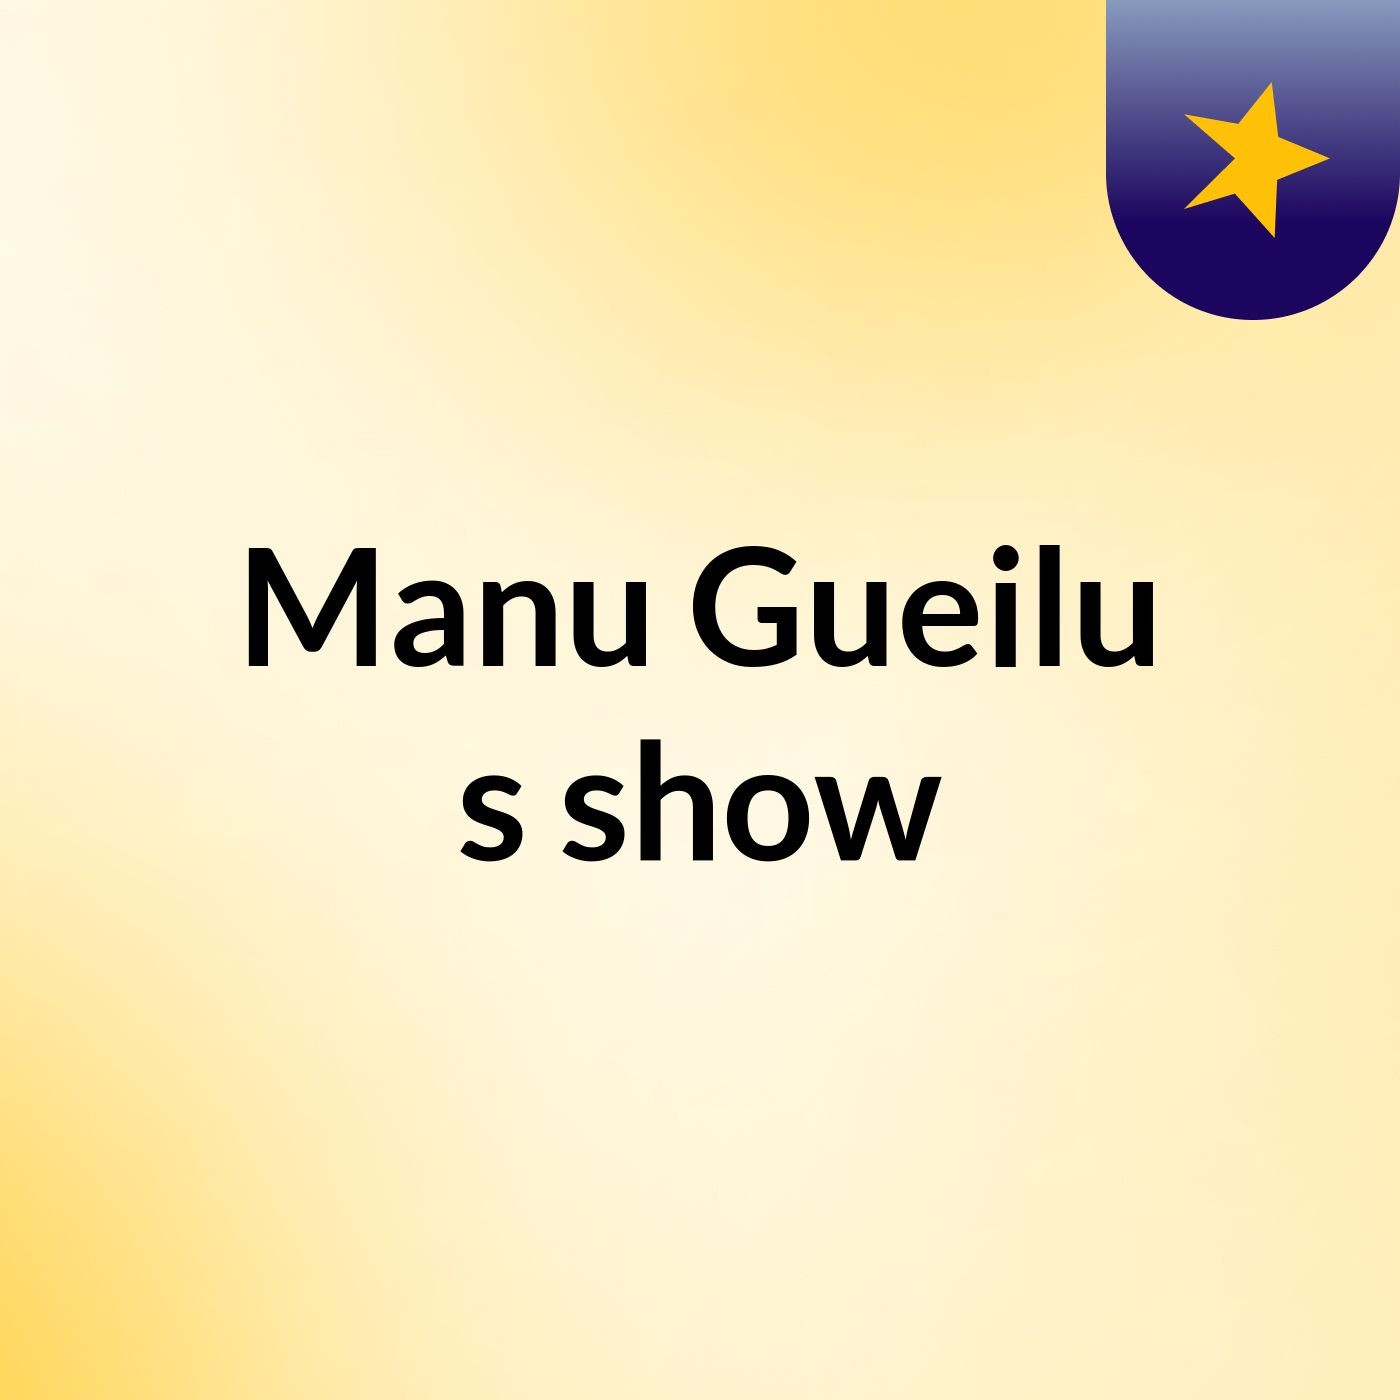 Manu Gueilu's show